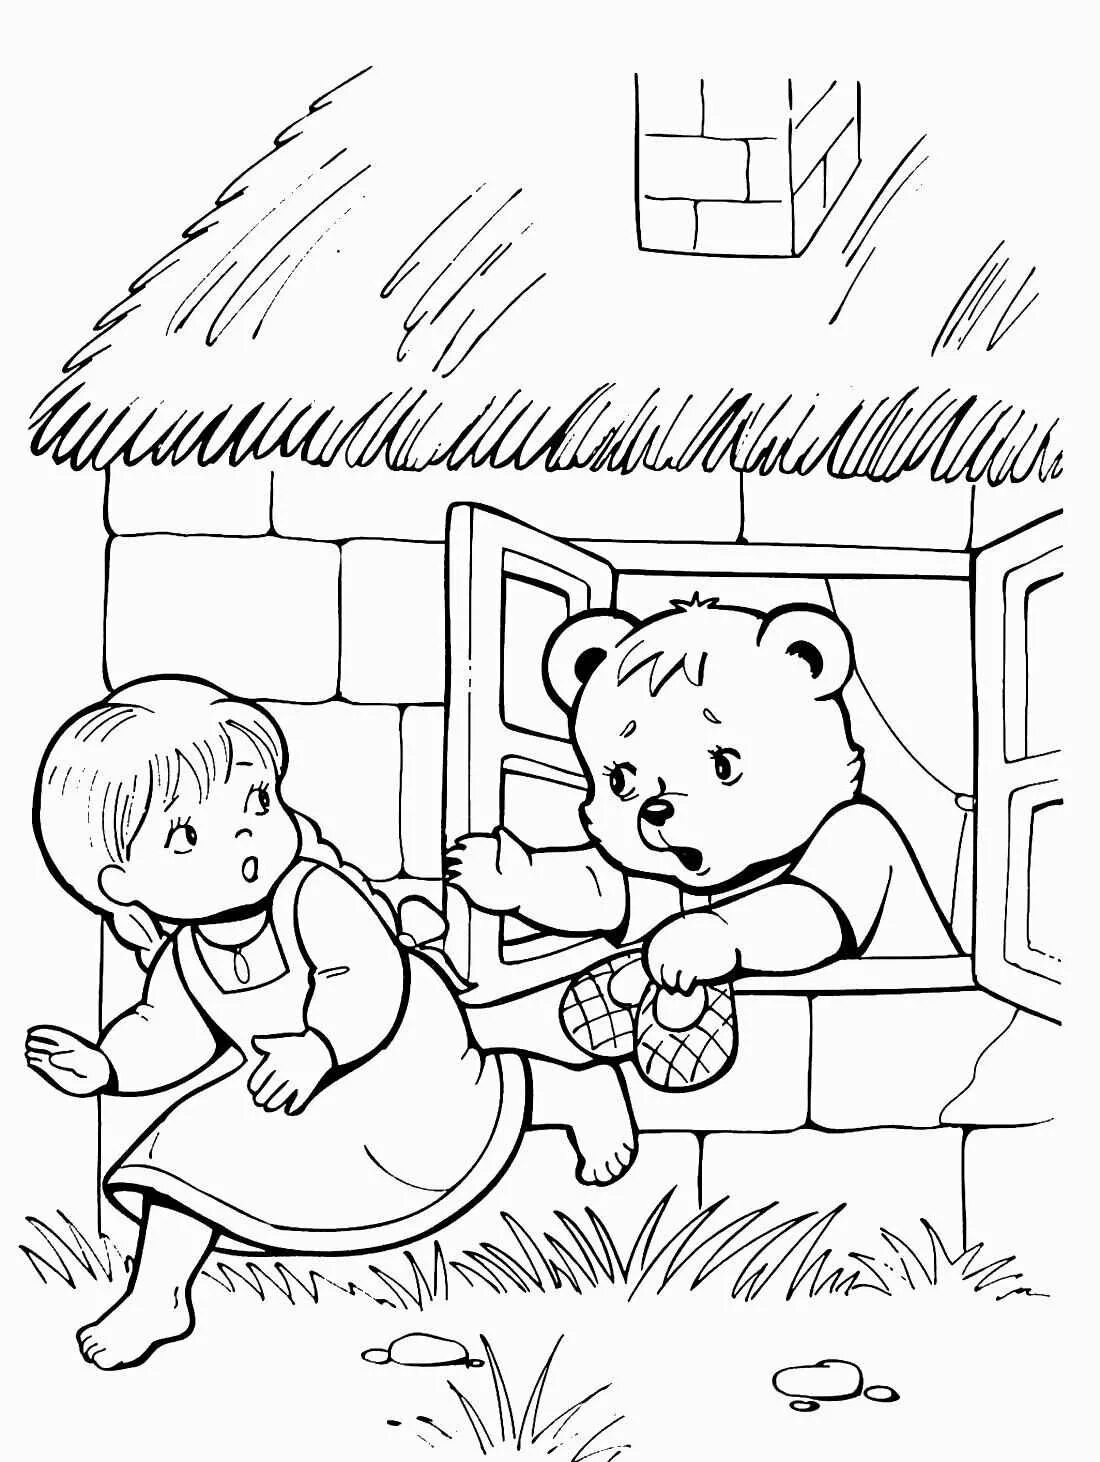 Раскраска по сказке три медведя для детей. Маша и три медведя сказка раскраска. Раскраска к сказке три медведя для детей. Раскраска русские народные сказки три медведя. Раскраски сказки 2 3 года